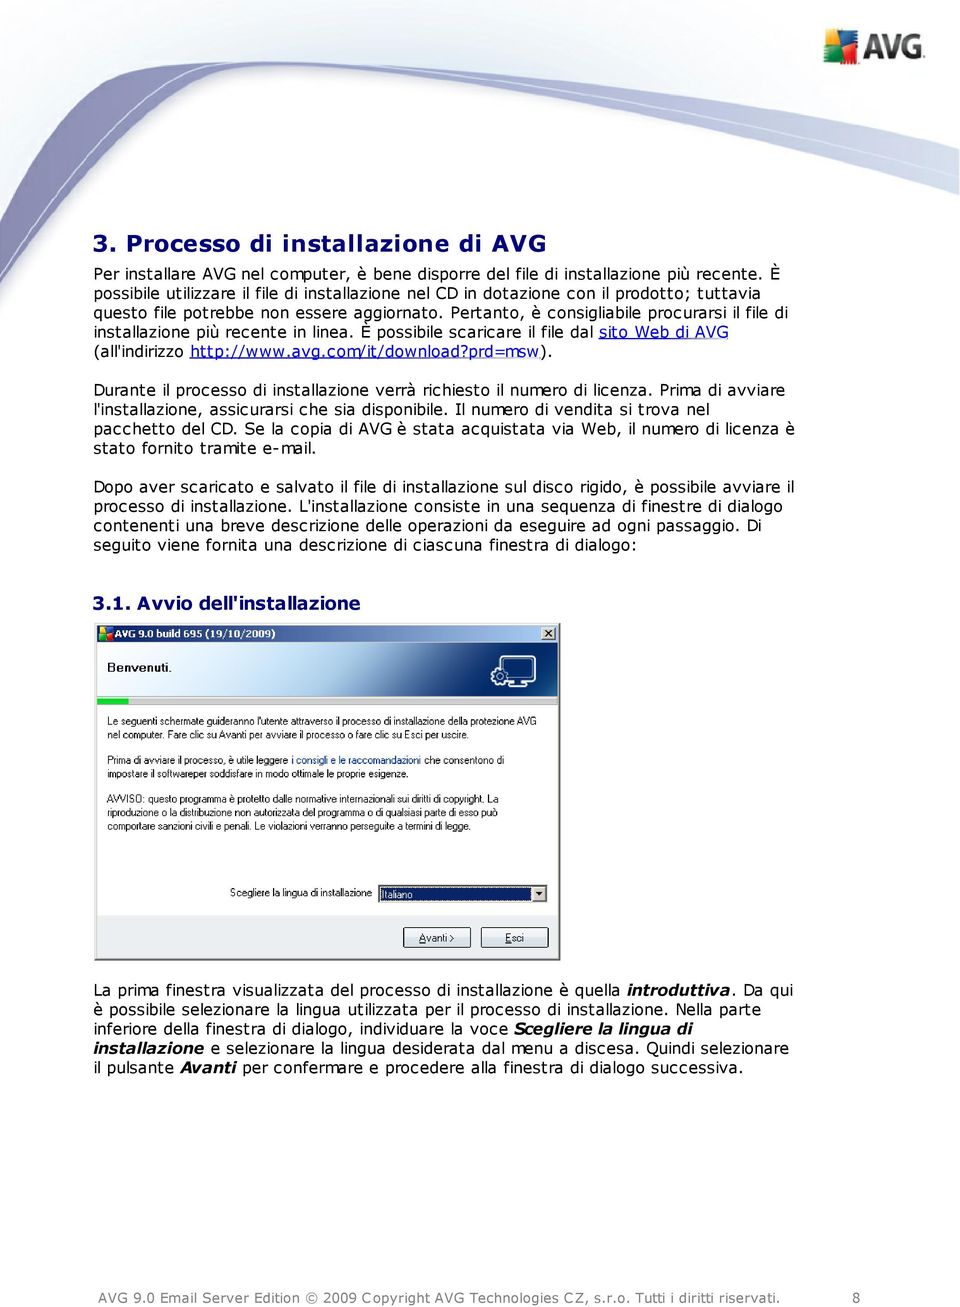 Pertanto, è consigliabile procurarsi il file di installazione più recente in linea. È possibile scaricare il file dal sito Web di AVG (all'indirizzo http://www.avg.com/it/download?prd=msw).